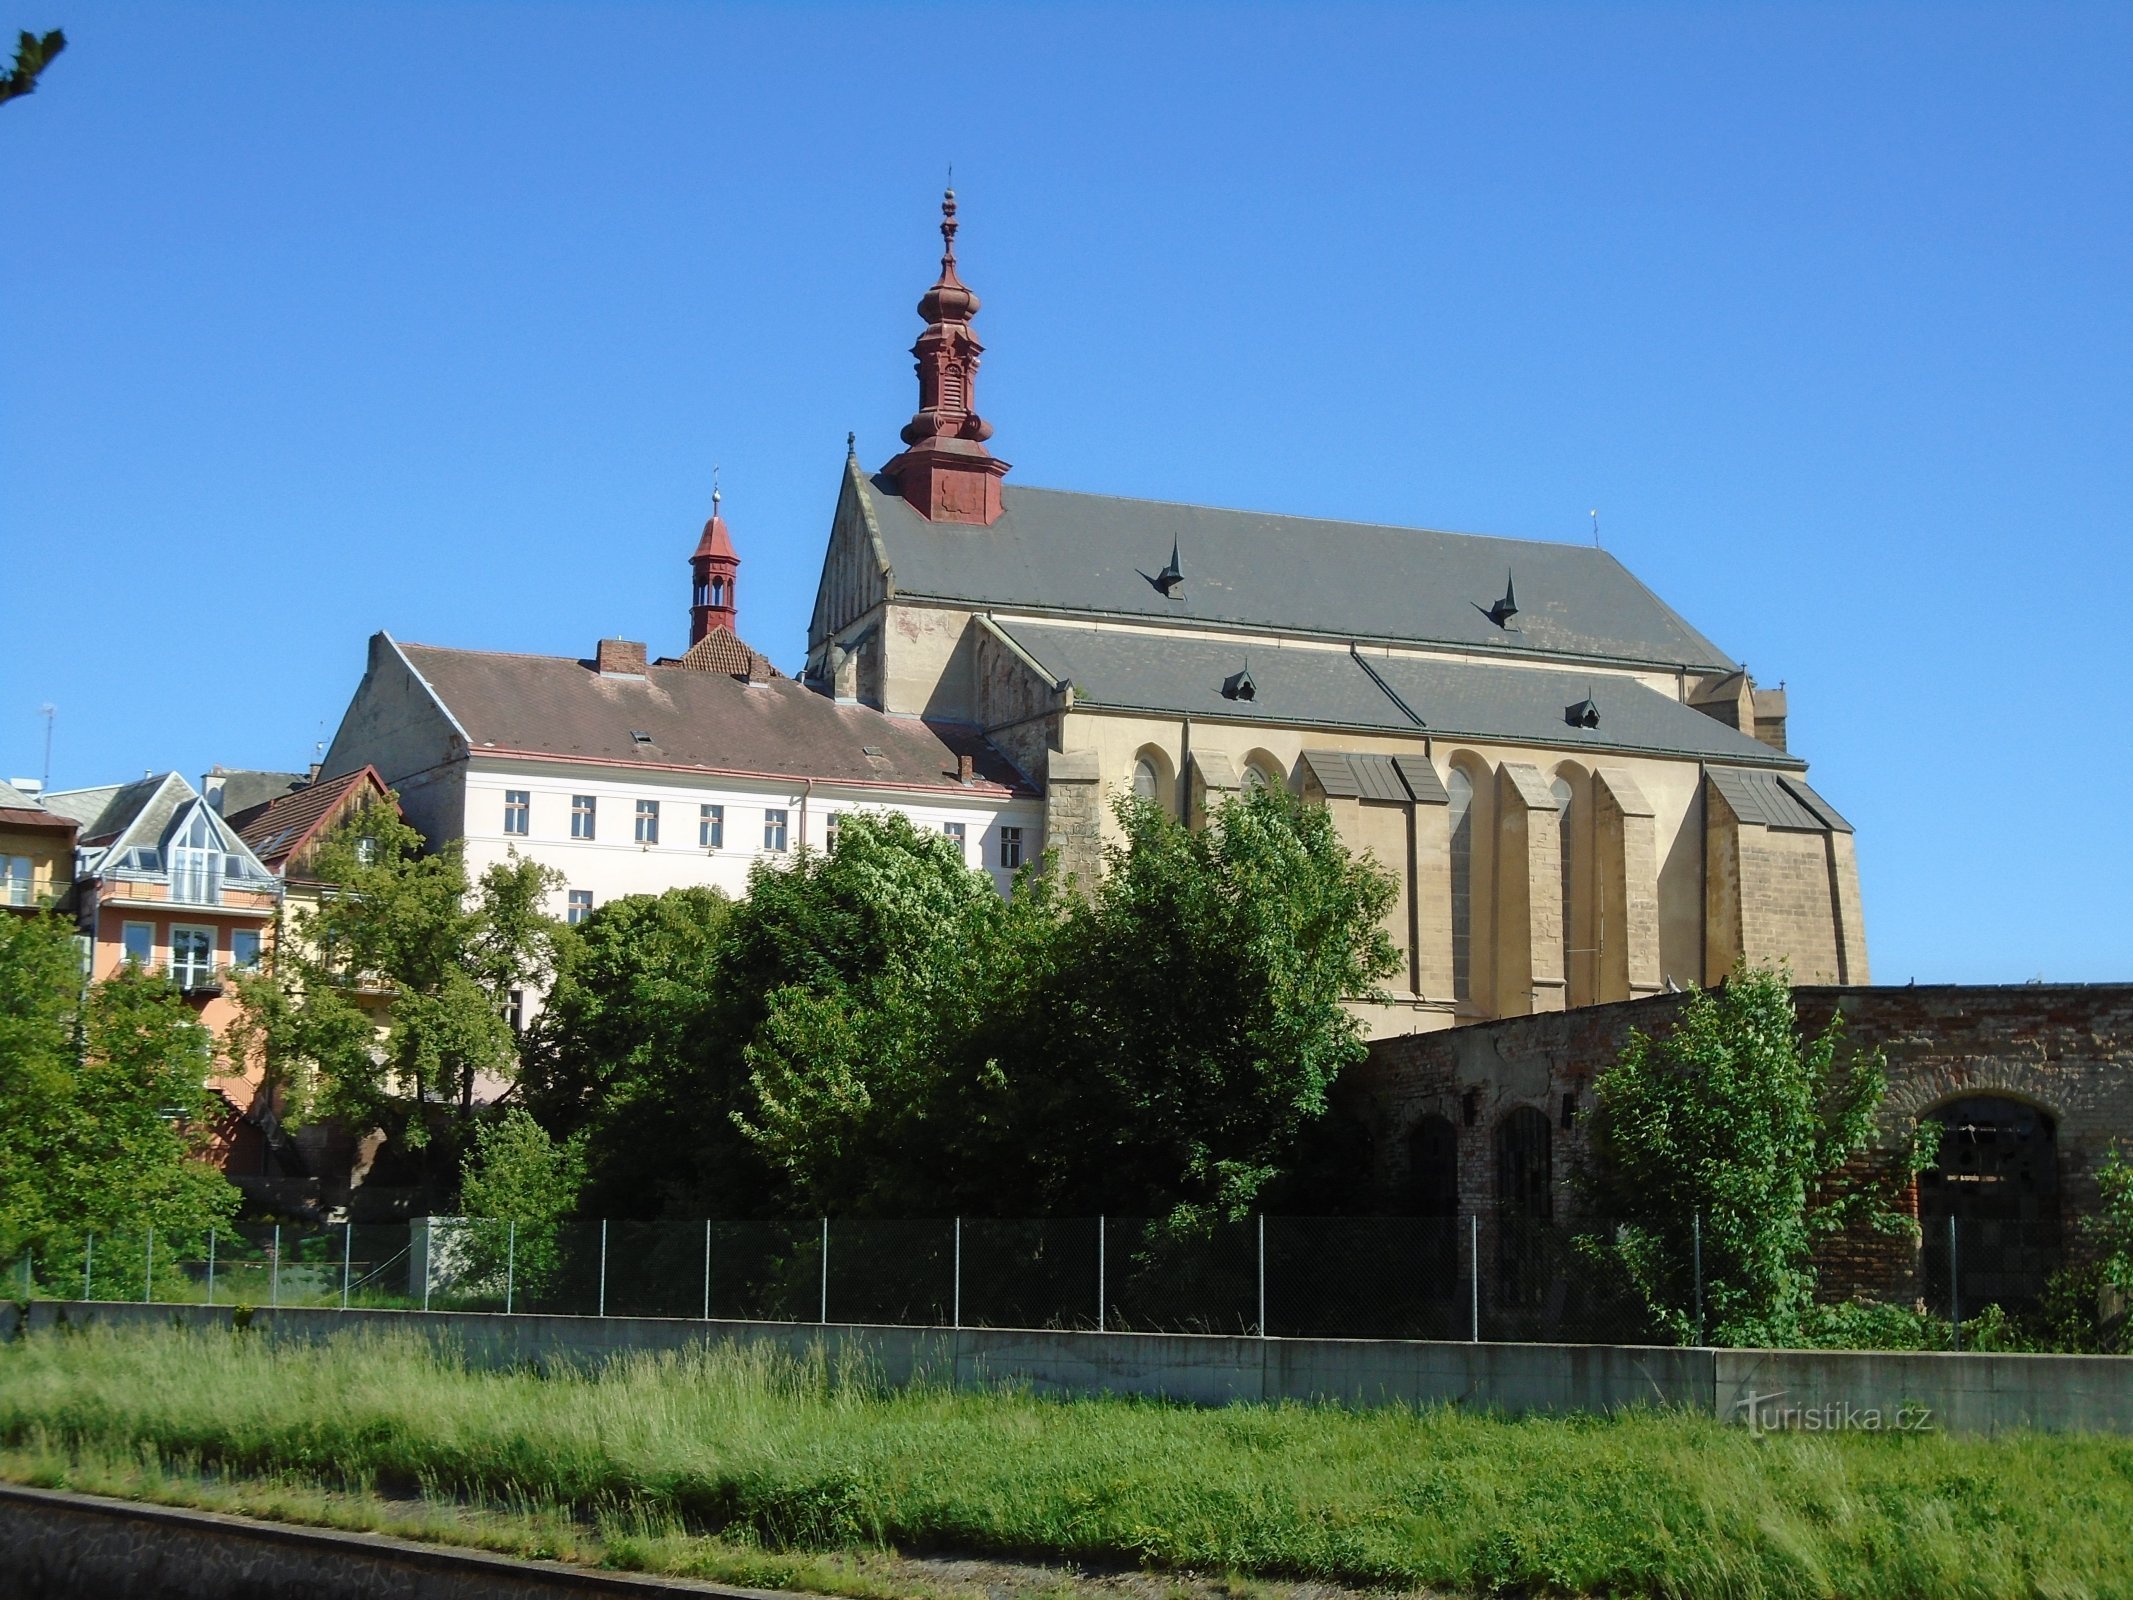 Kościół św. Mikołaj, biskup (Jaroměř)